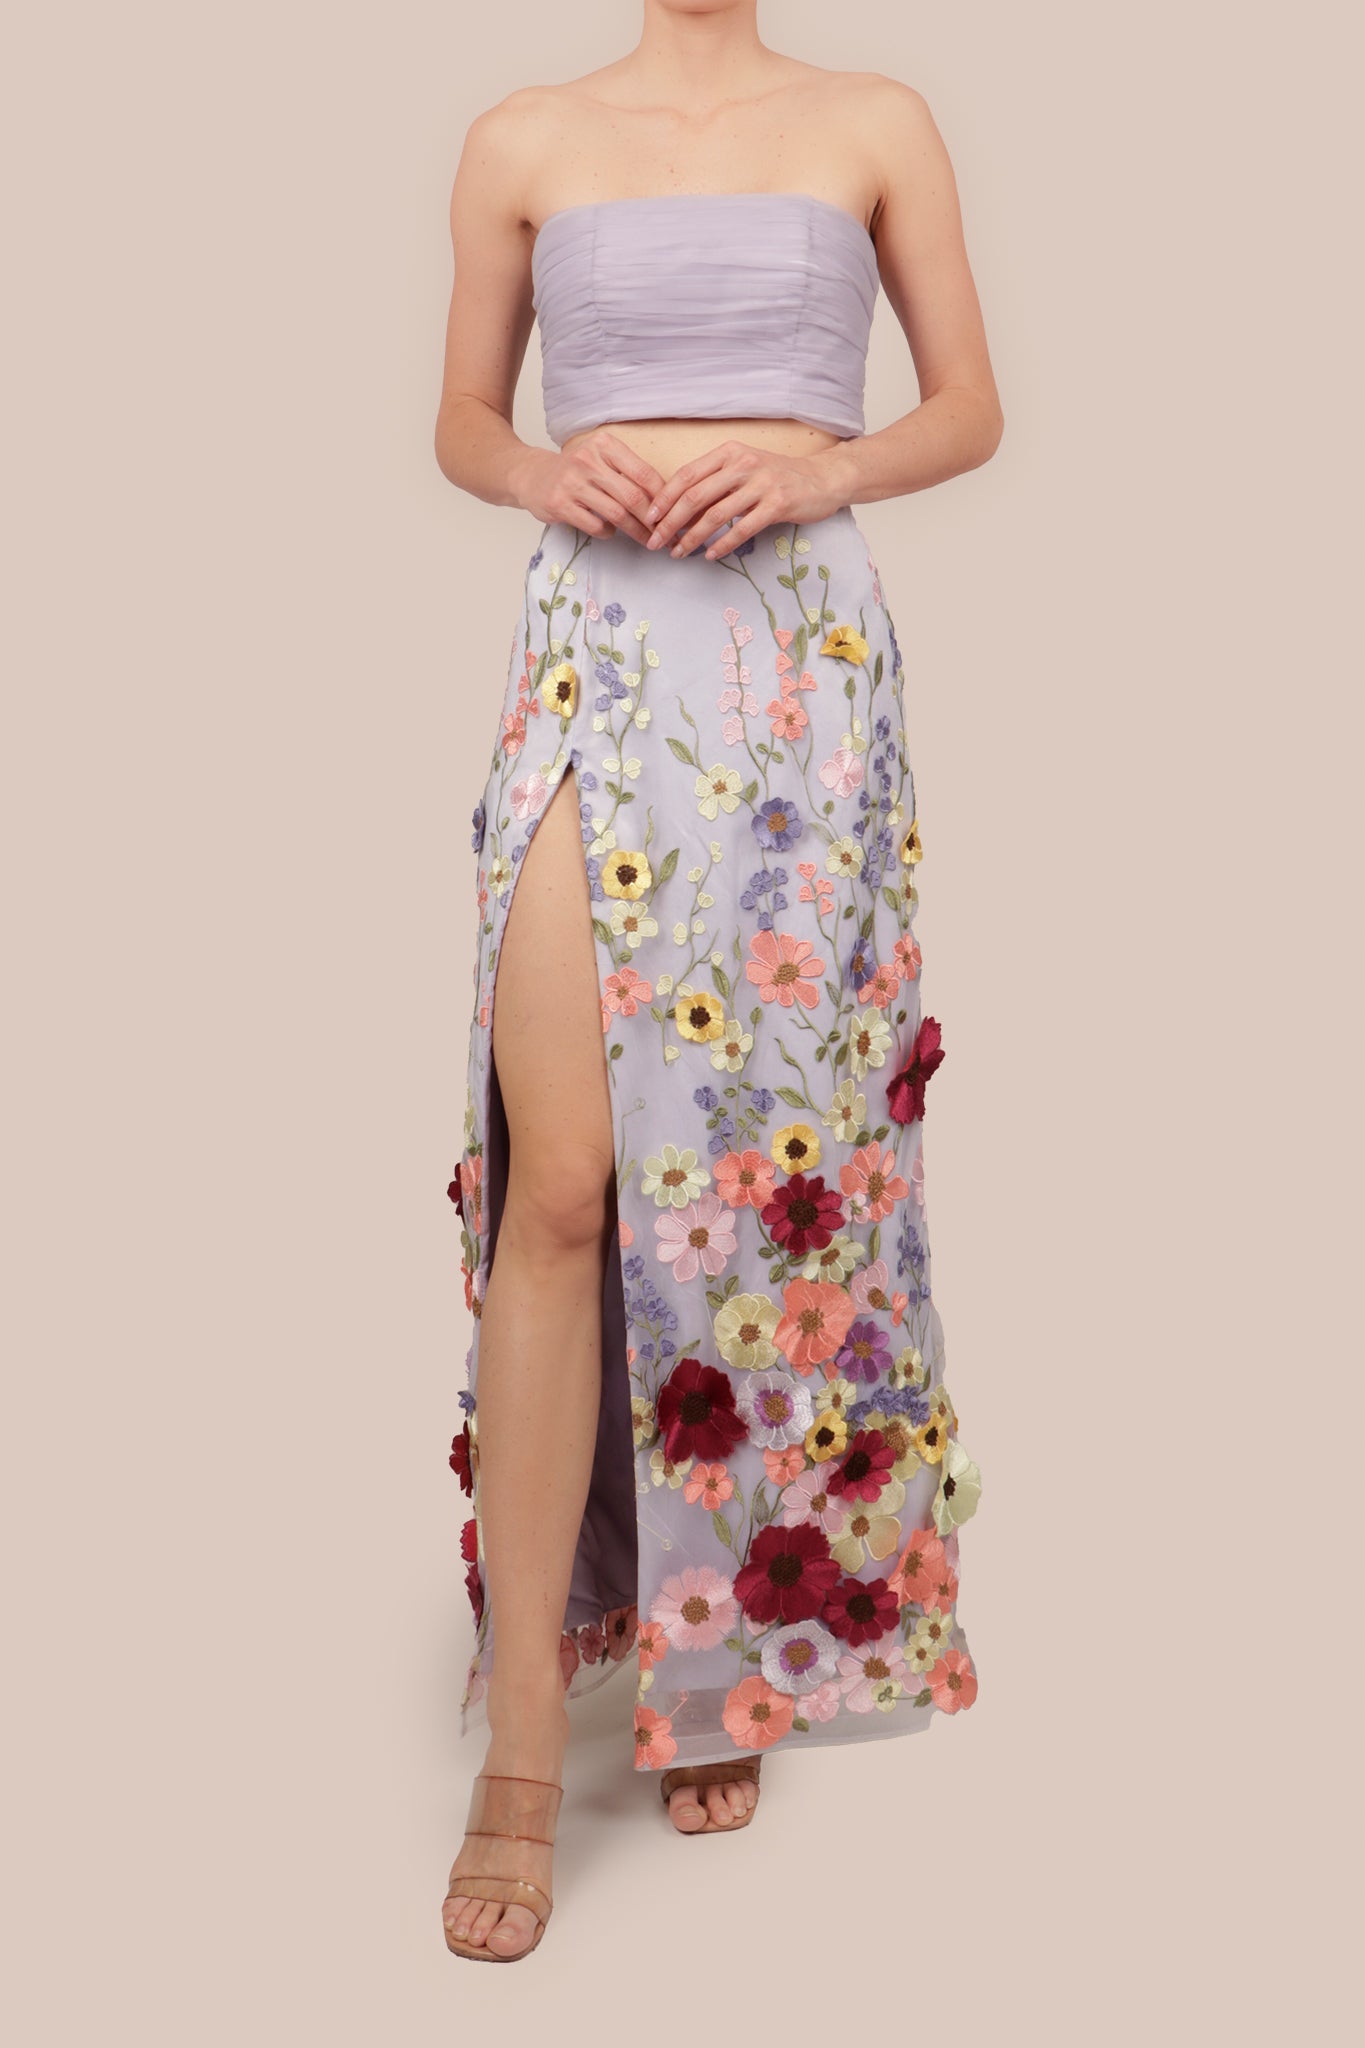 Conjunto top y falda lila bordada flores multi